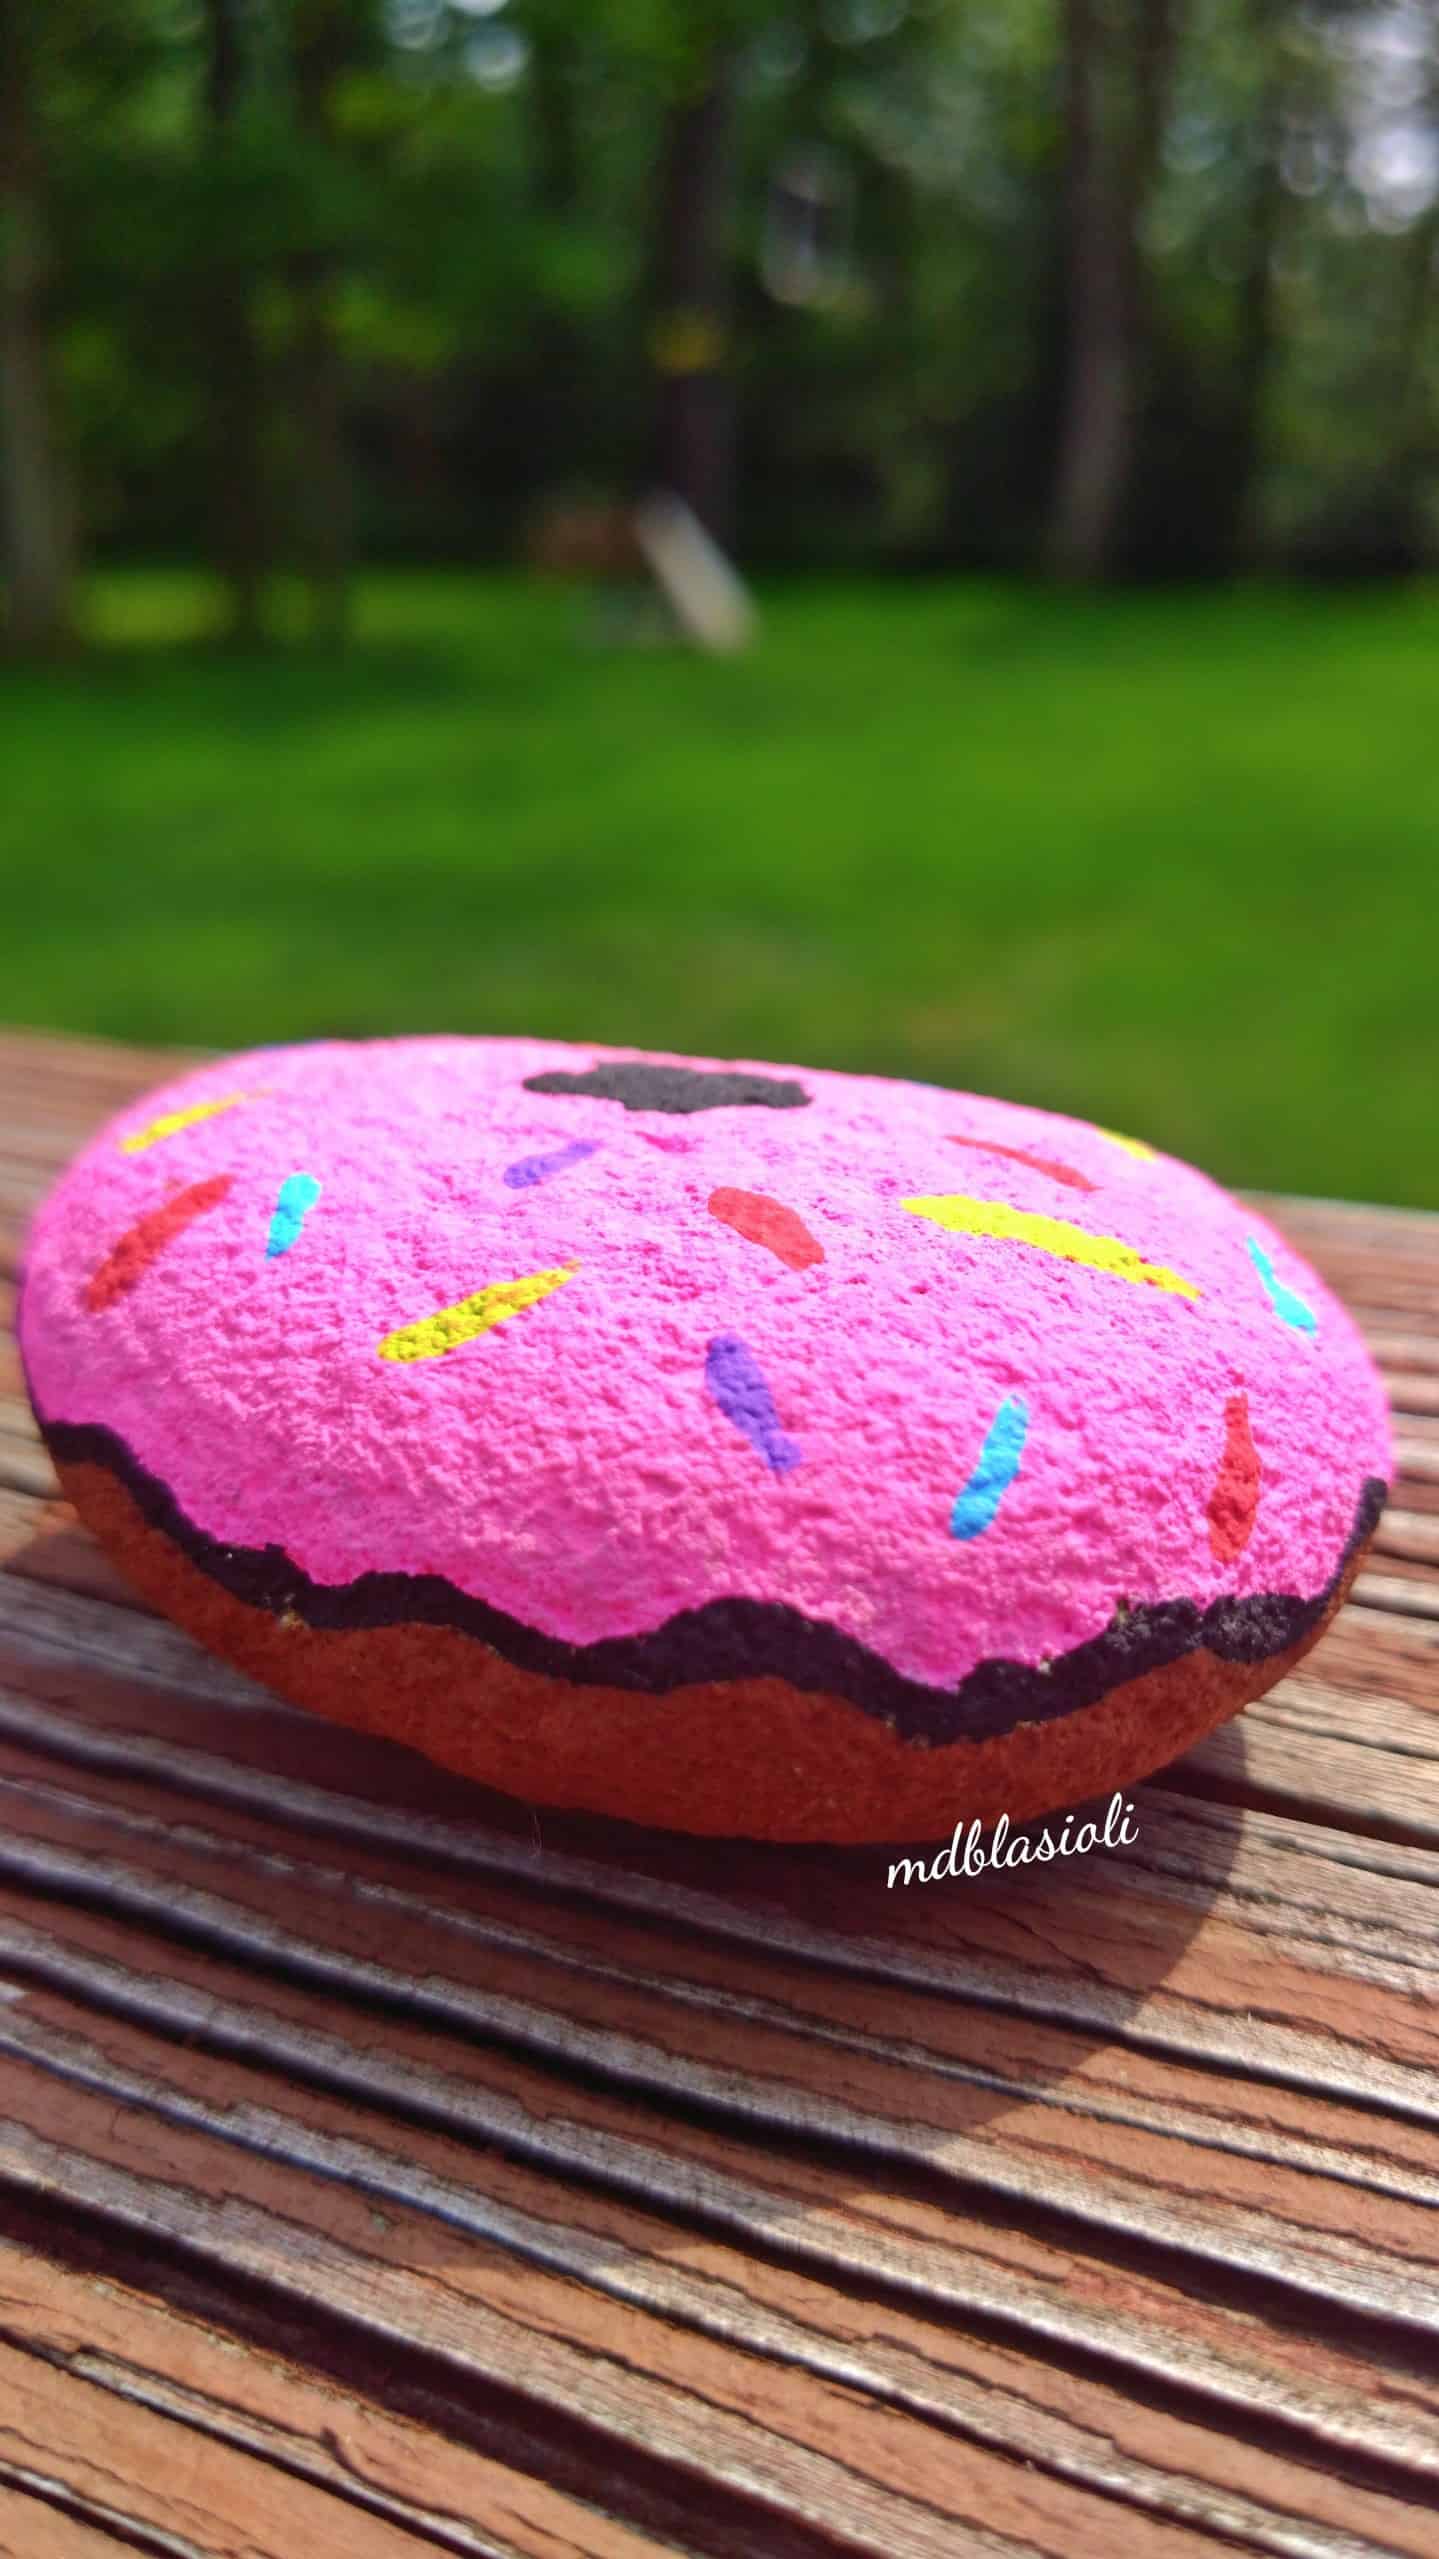 Donut com pedras pintadas